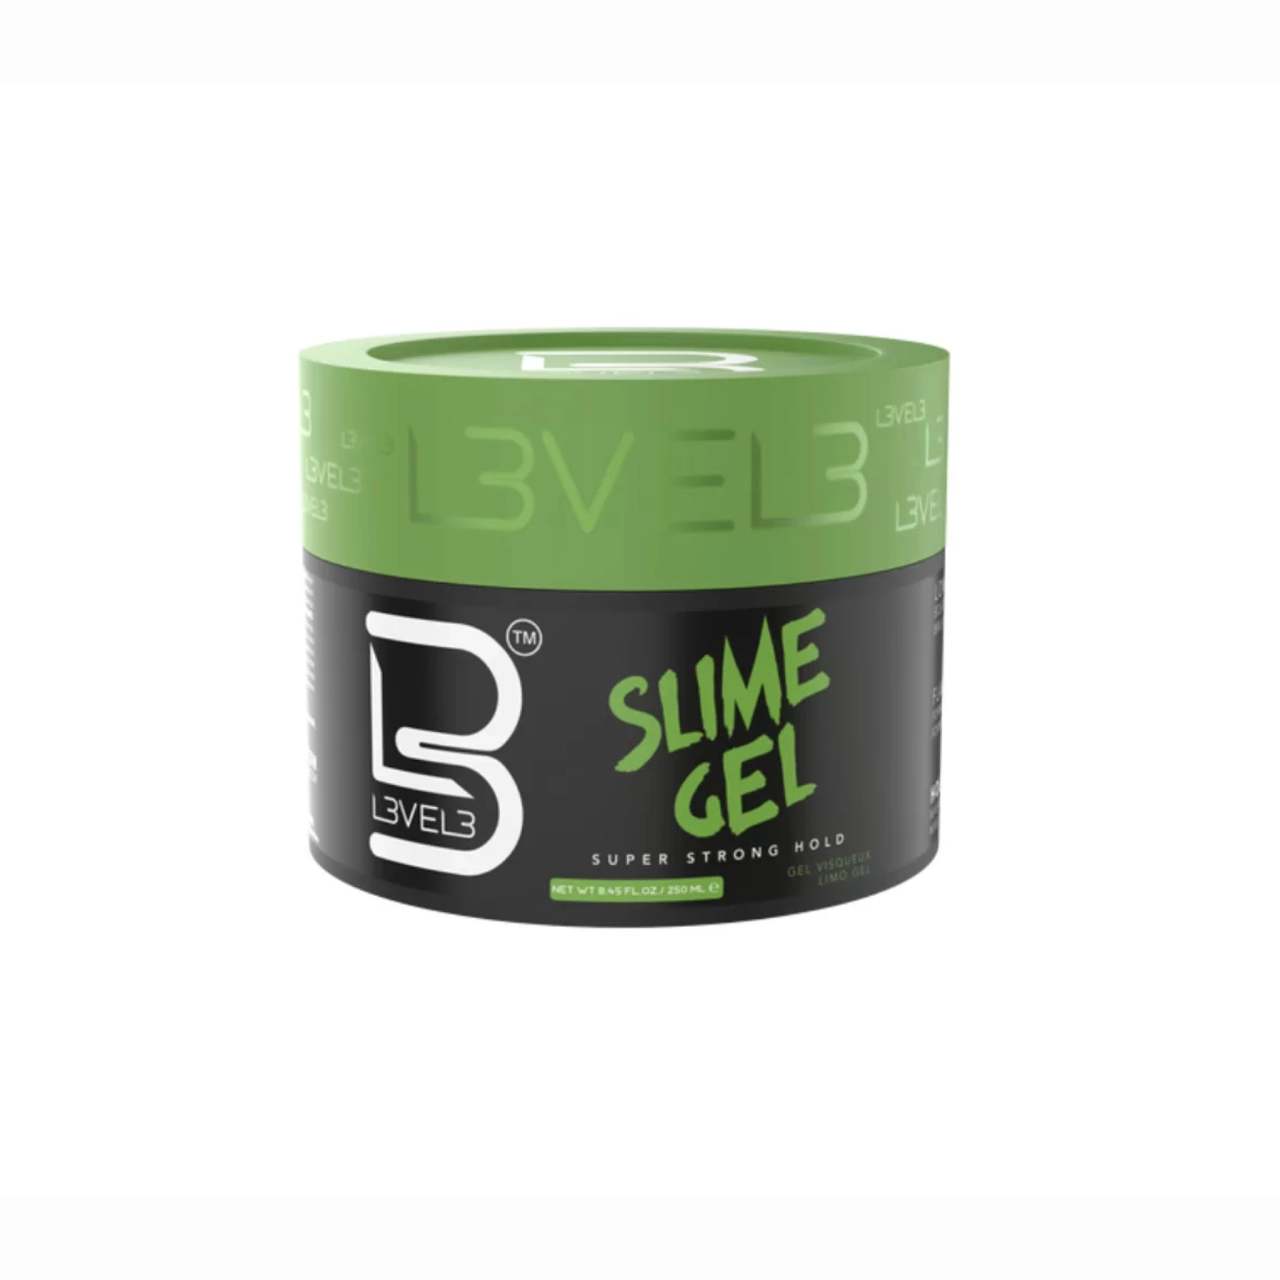 L3VEL3 Slime Gel - gel na vlasy, 250 ml